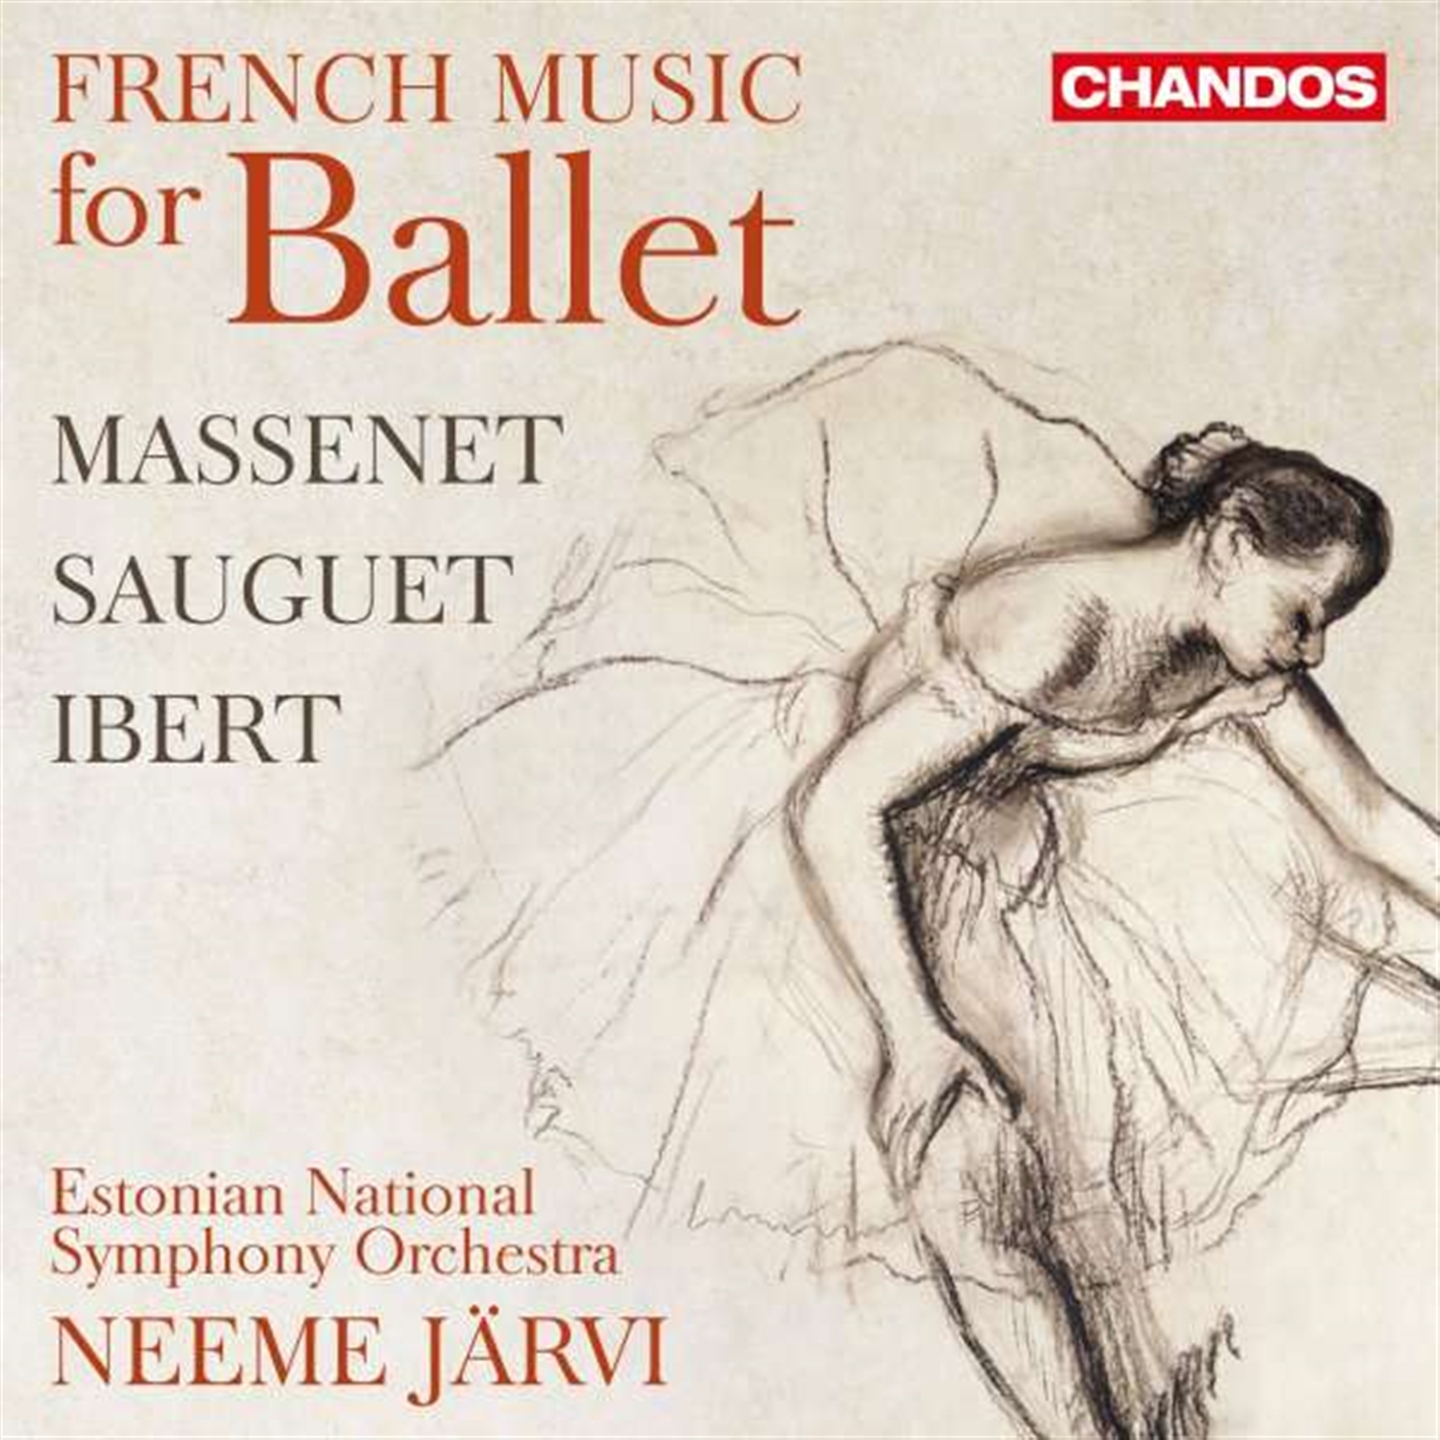 MASSENET / SAUGUET / IBERT: FRENCH MUSIC FOR BALLET